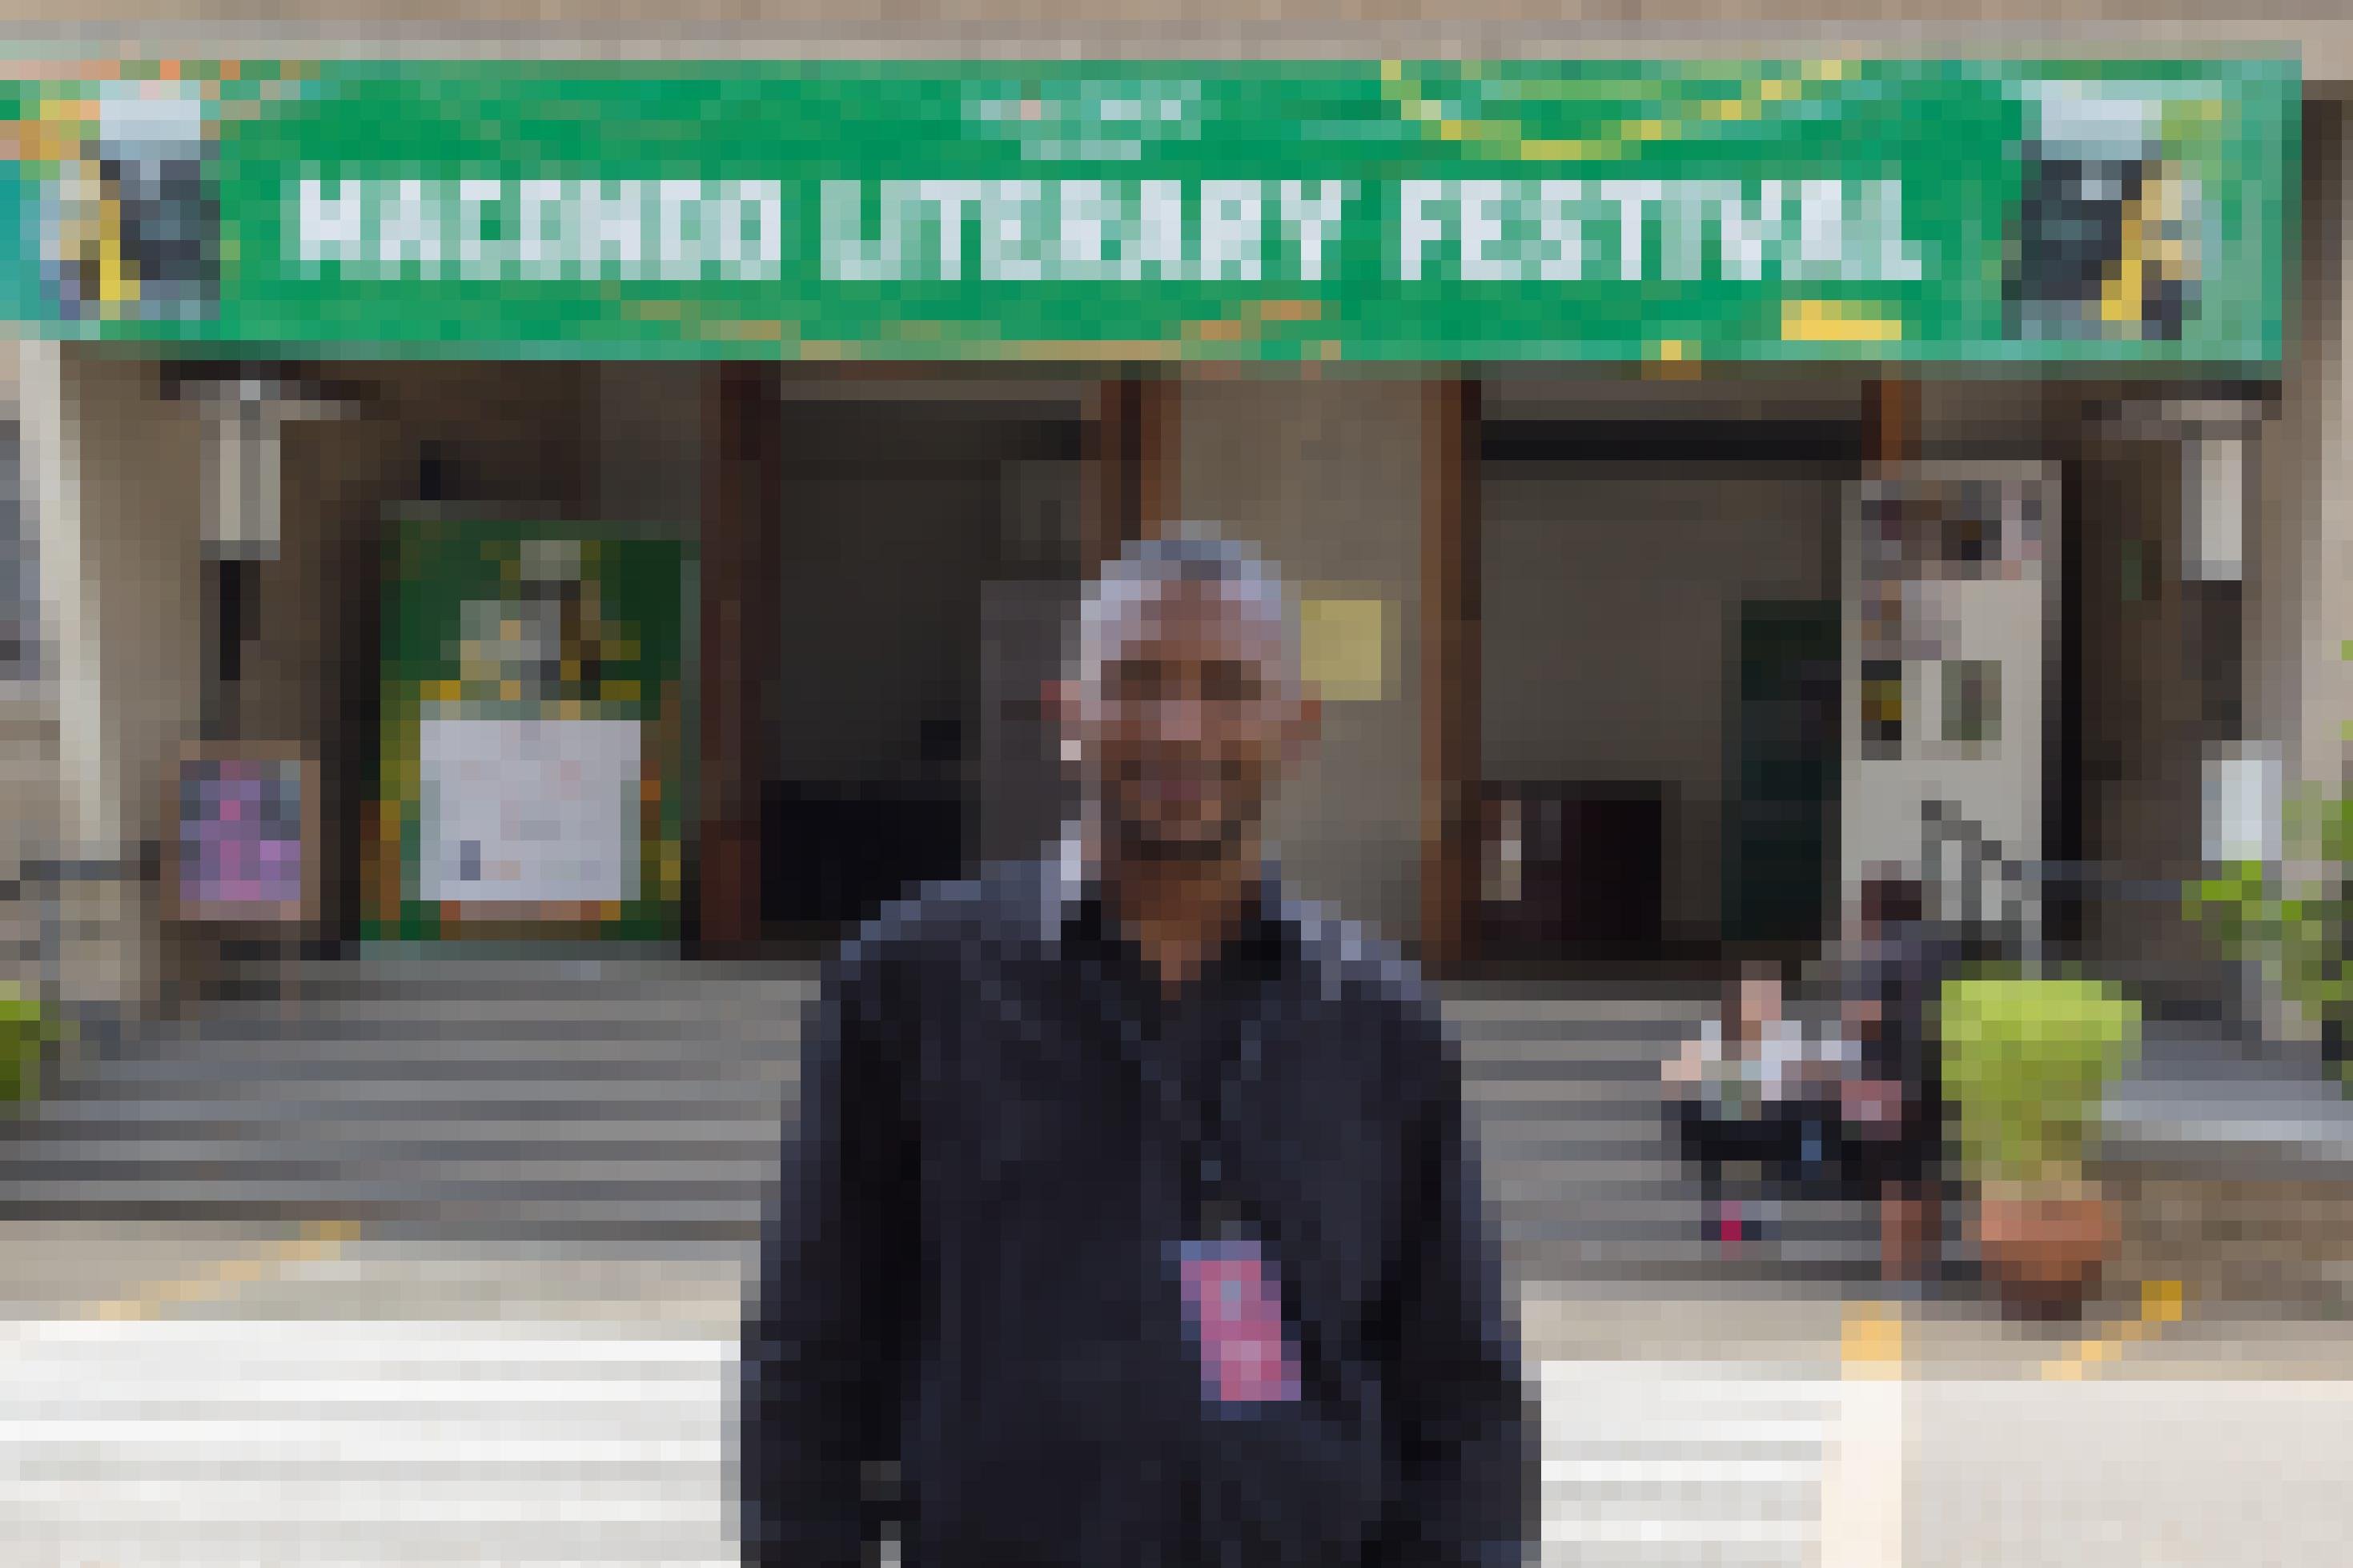 Ein Mann steht vor dem Eingang eines Hauses. Über dem Eingang hängt ein Banner mit der Aufschrift „Macondo Literary Festival“.